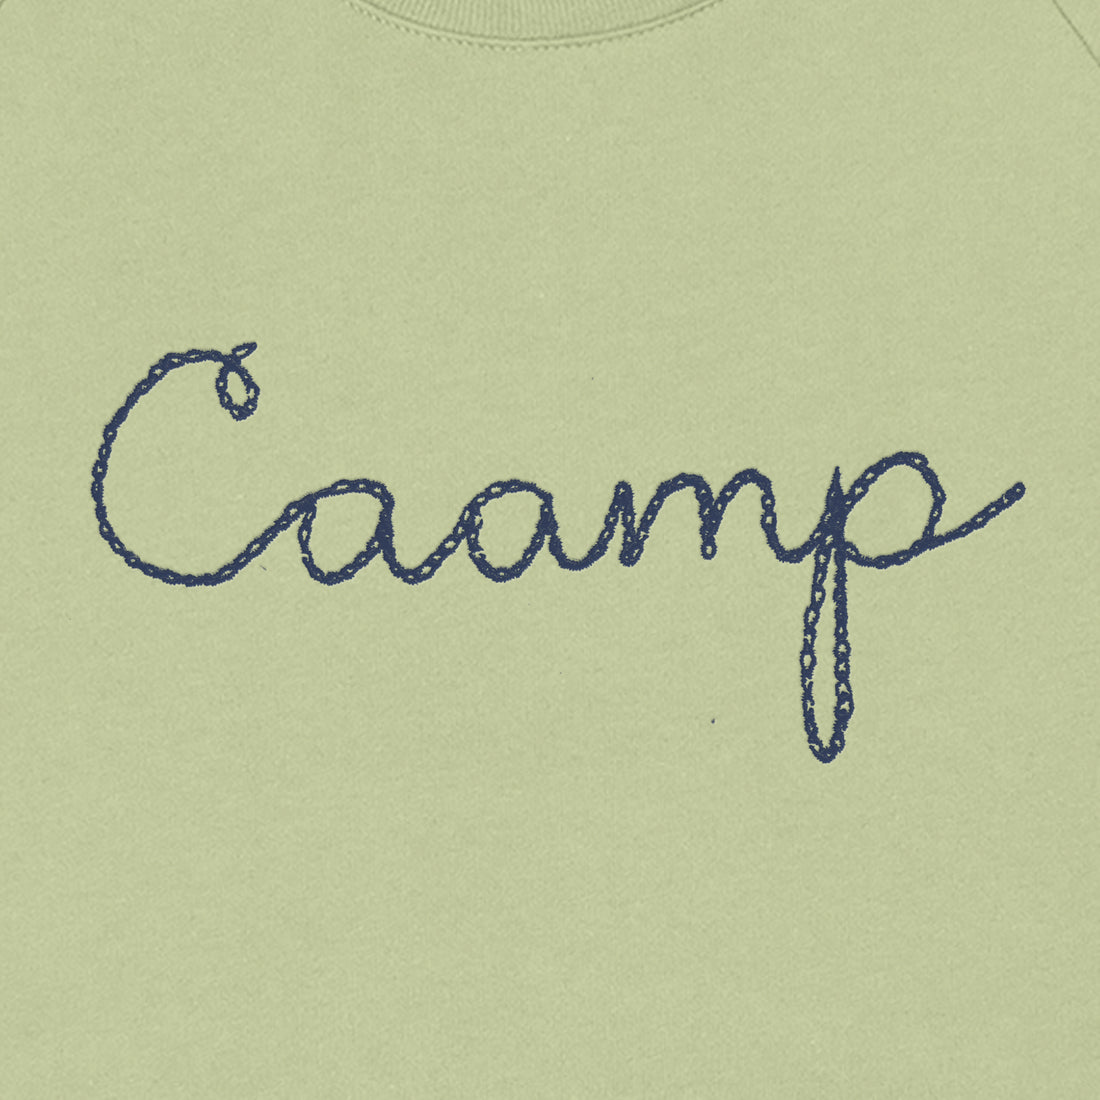 Caamp Chain-stitched Logo Crewneck Sweatshirt